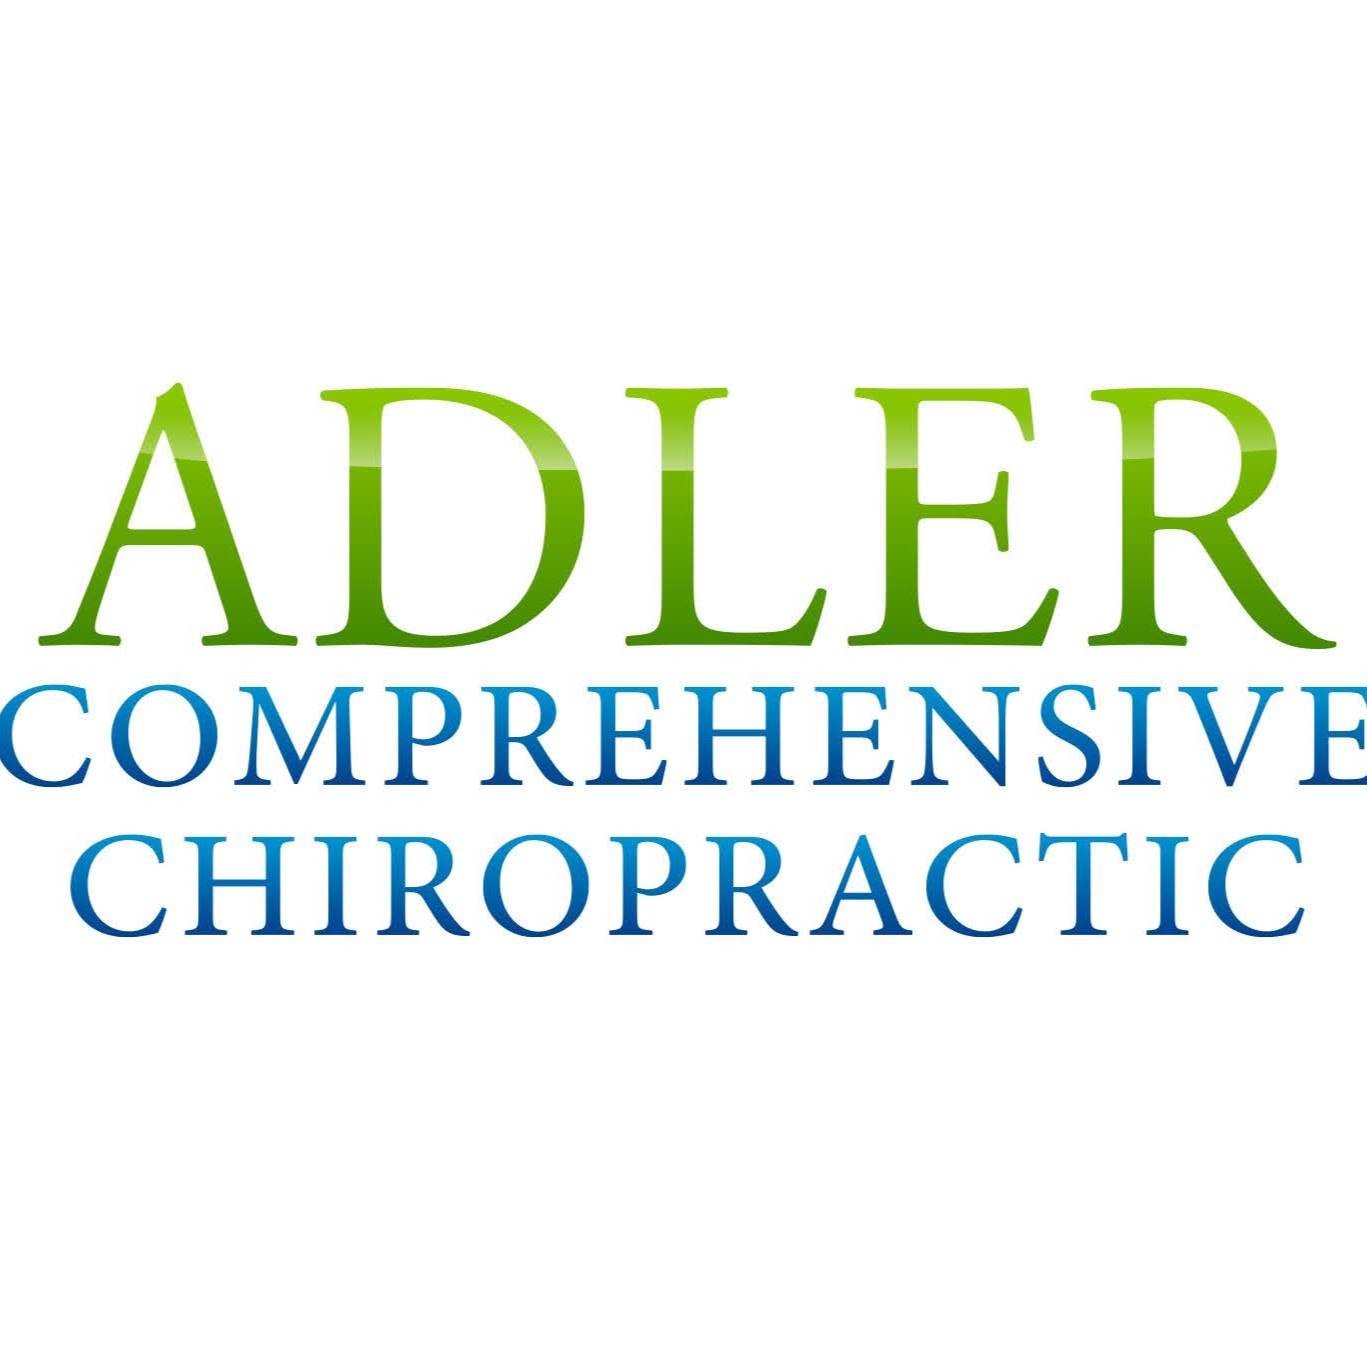 Adler Comprehensive Chiropractic